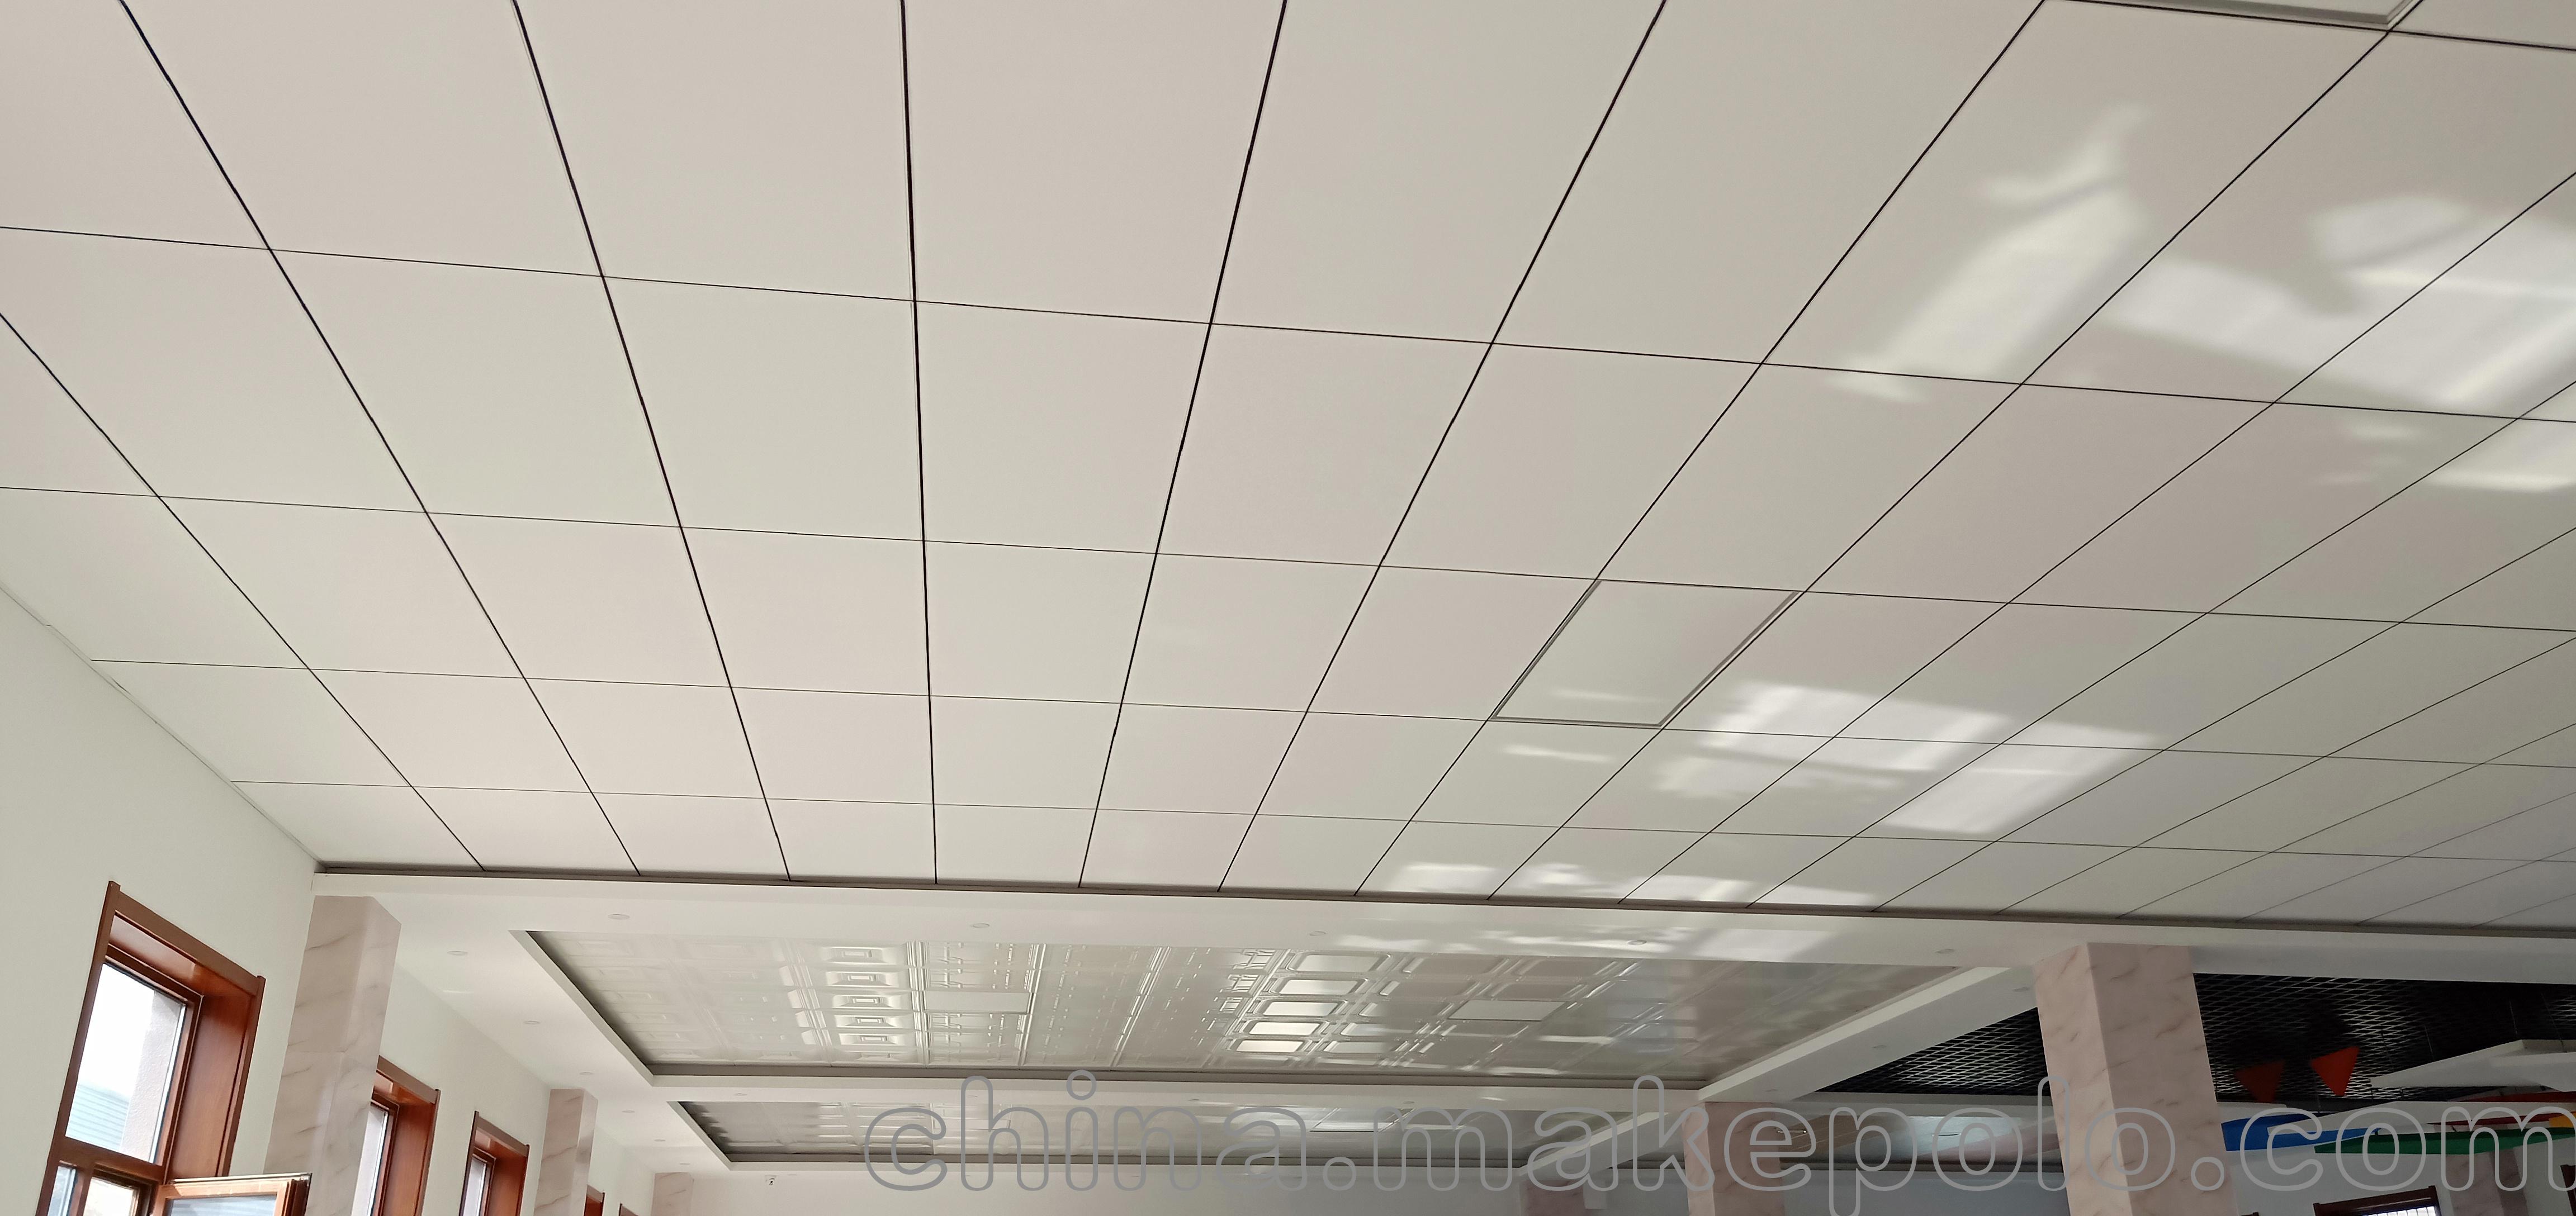 玻纤吸音天花板除了在吸音方面有优良的特点,在环保,保温,抑菌等各